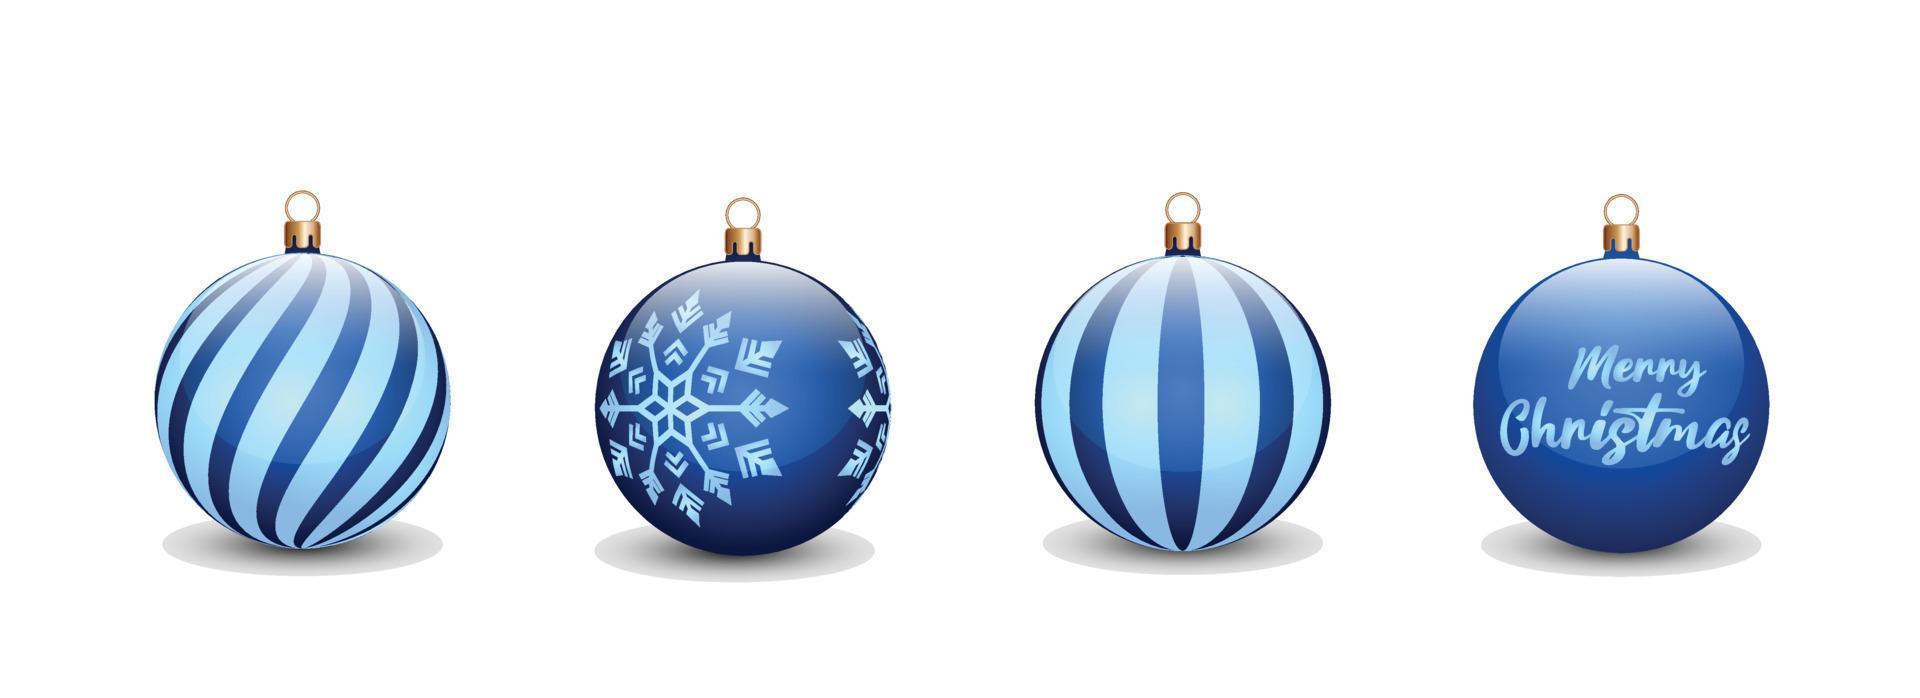 conjunto de conceito de bolas de natal na cor azul para a celebração do dia de natal. pode ser usado para ativos de design, convites, cartazes, banners, outdoors com um conceito de natal vetor